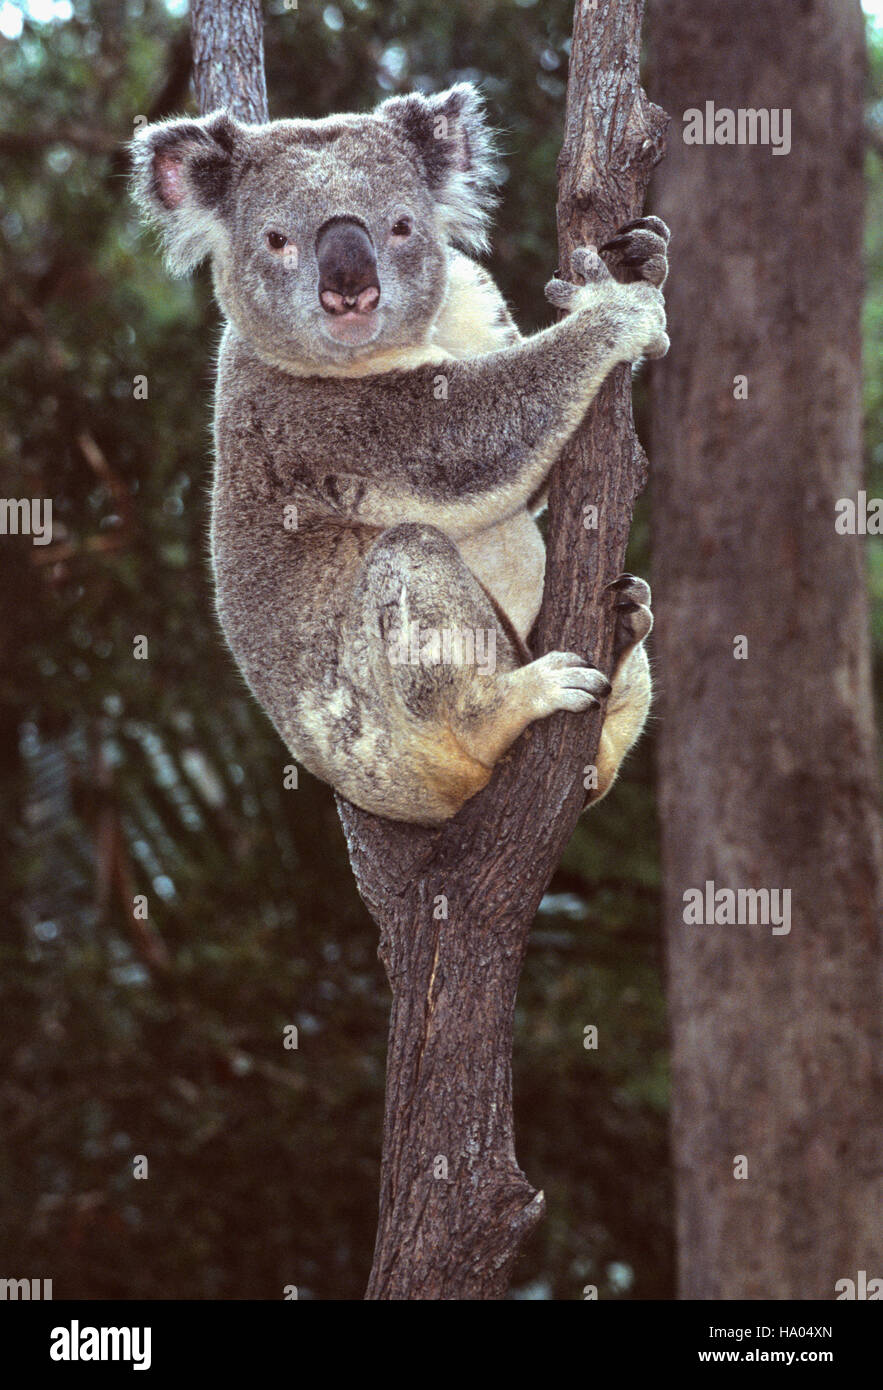 Koala,Phascolarctos cinereus,New South Wales,Australia Stock Photo